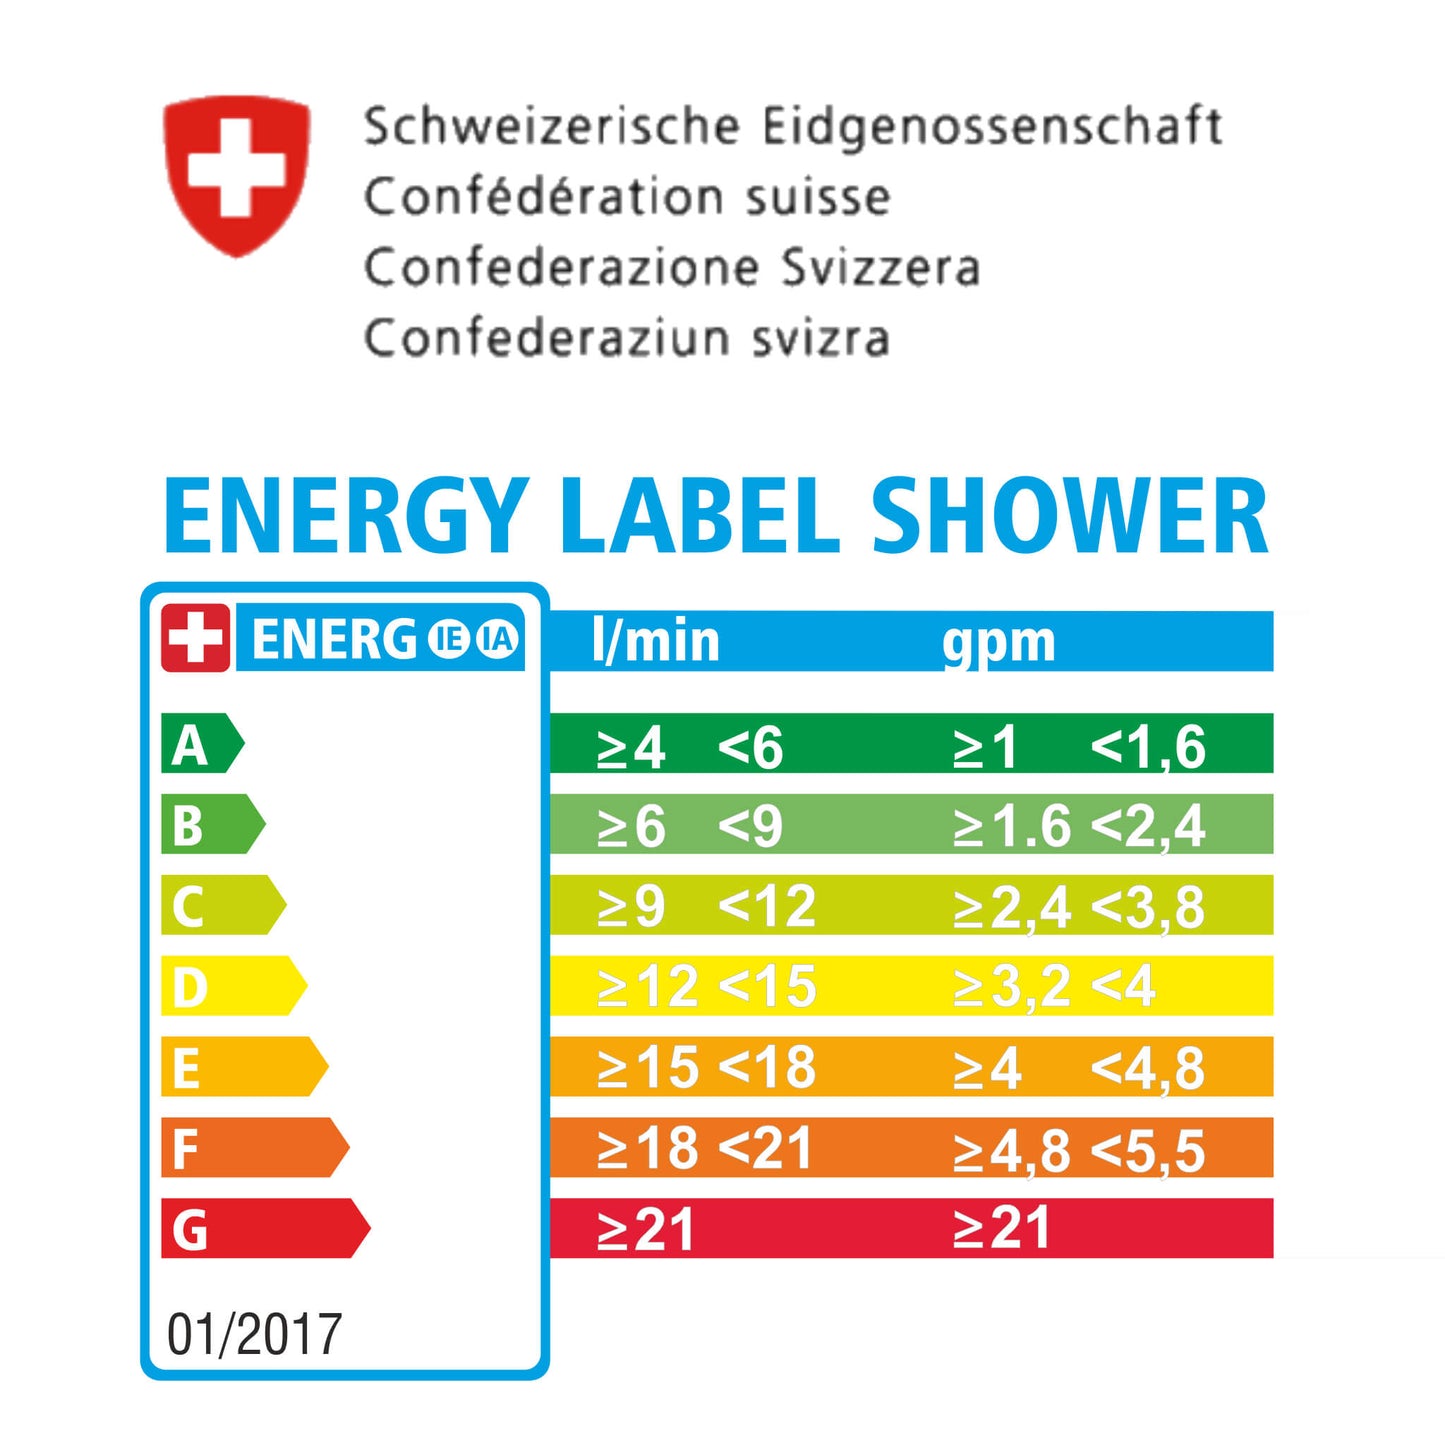 Energylabel des Bundesamts für Energie, Darstellung in Tabellenform der Energieklassen A-G und .